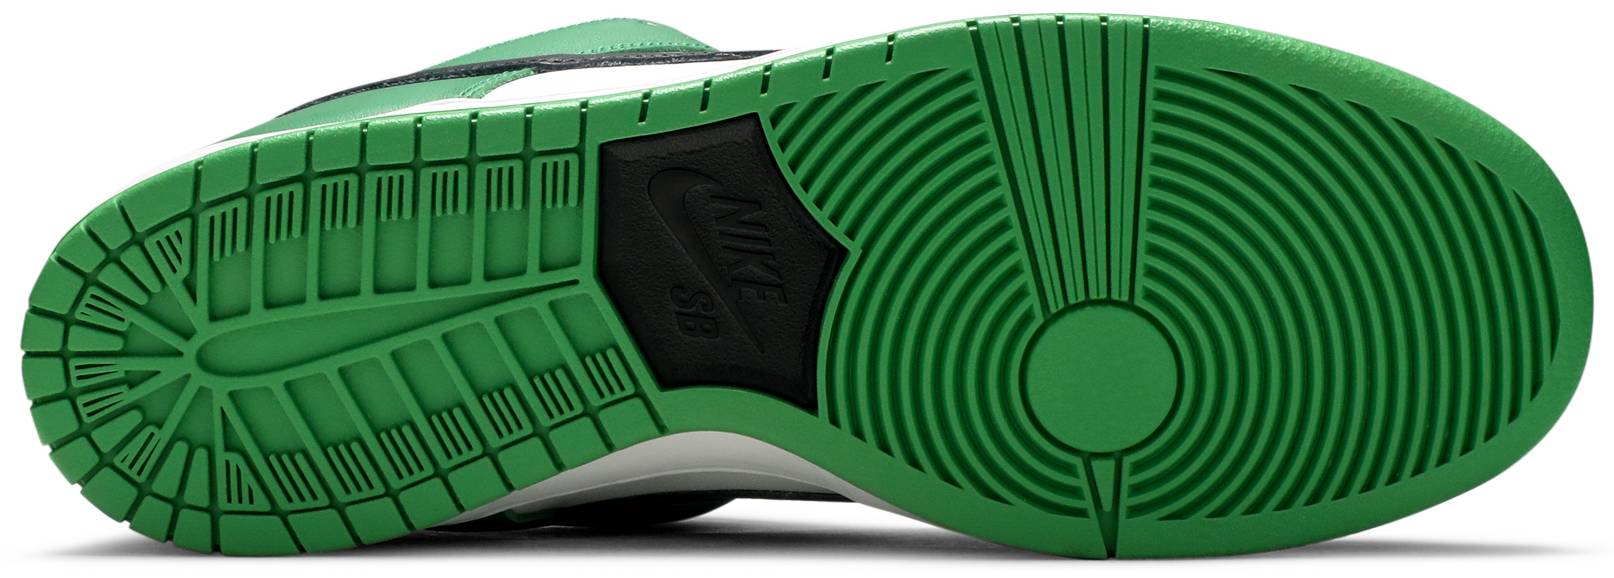 Nike SB Dunk Low Classic Green Men's